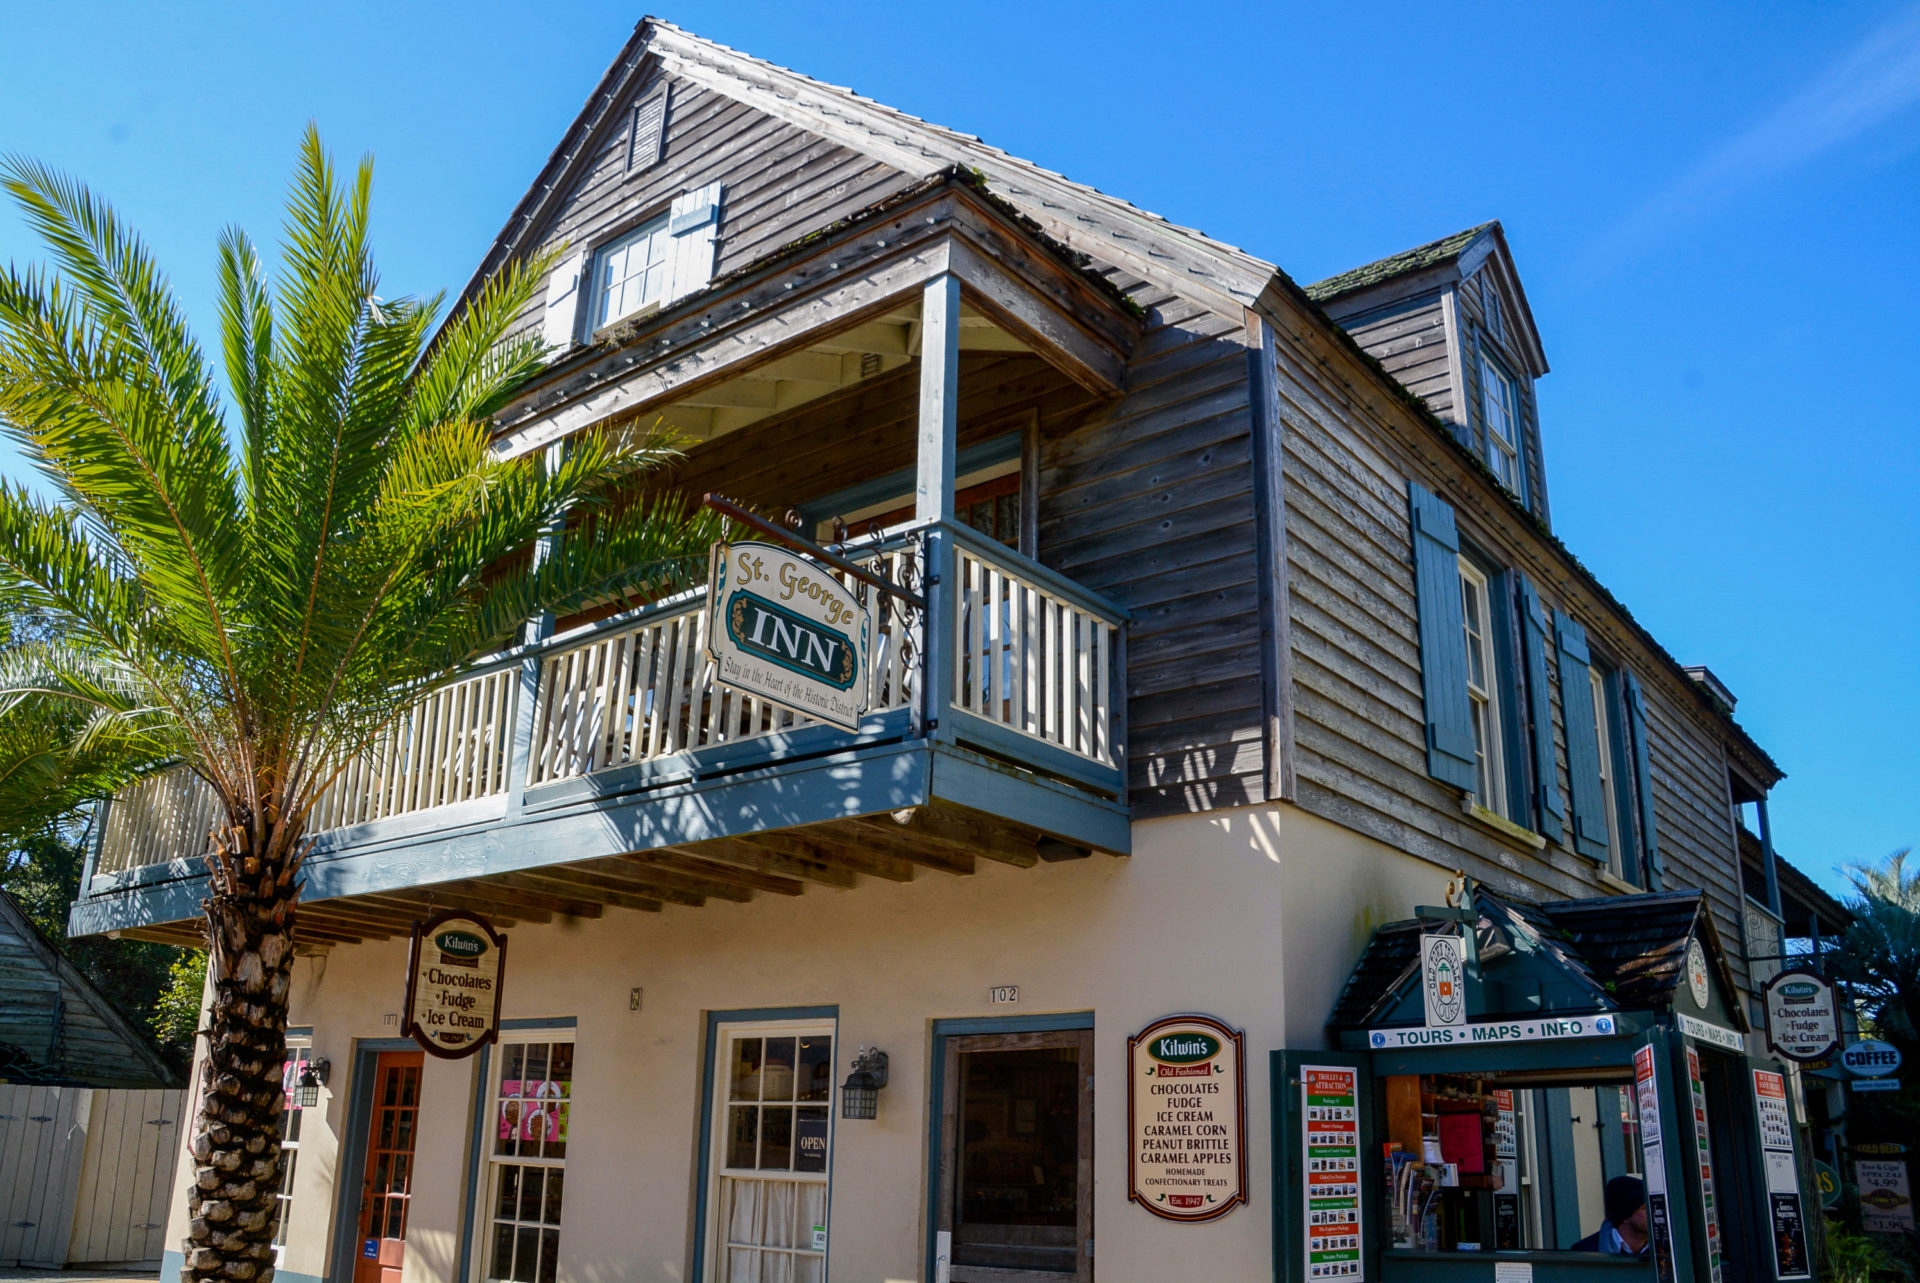 Das St. George Inn im Colonial Quarter von St. Augustine